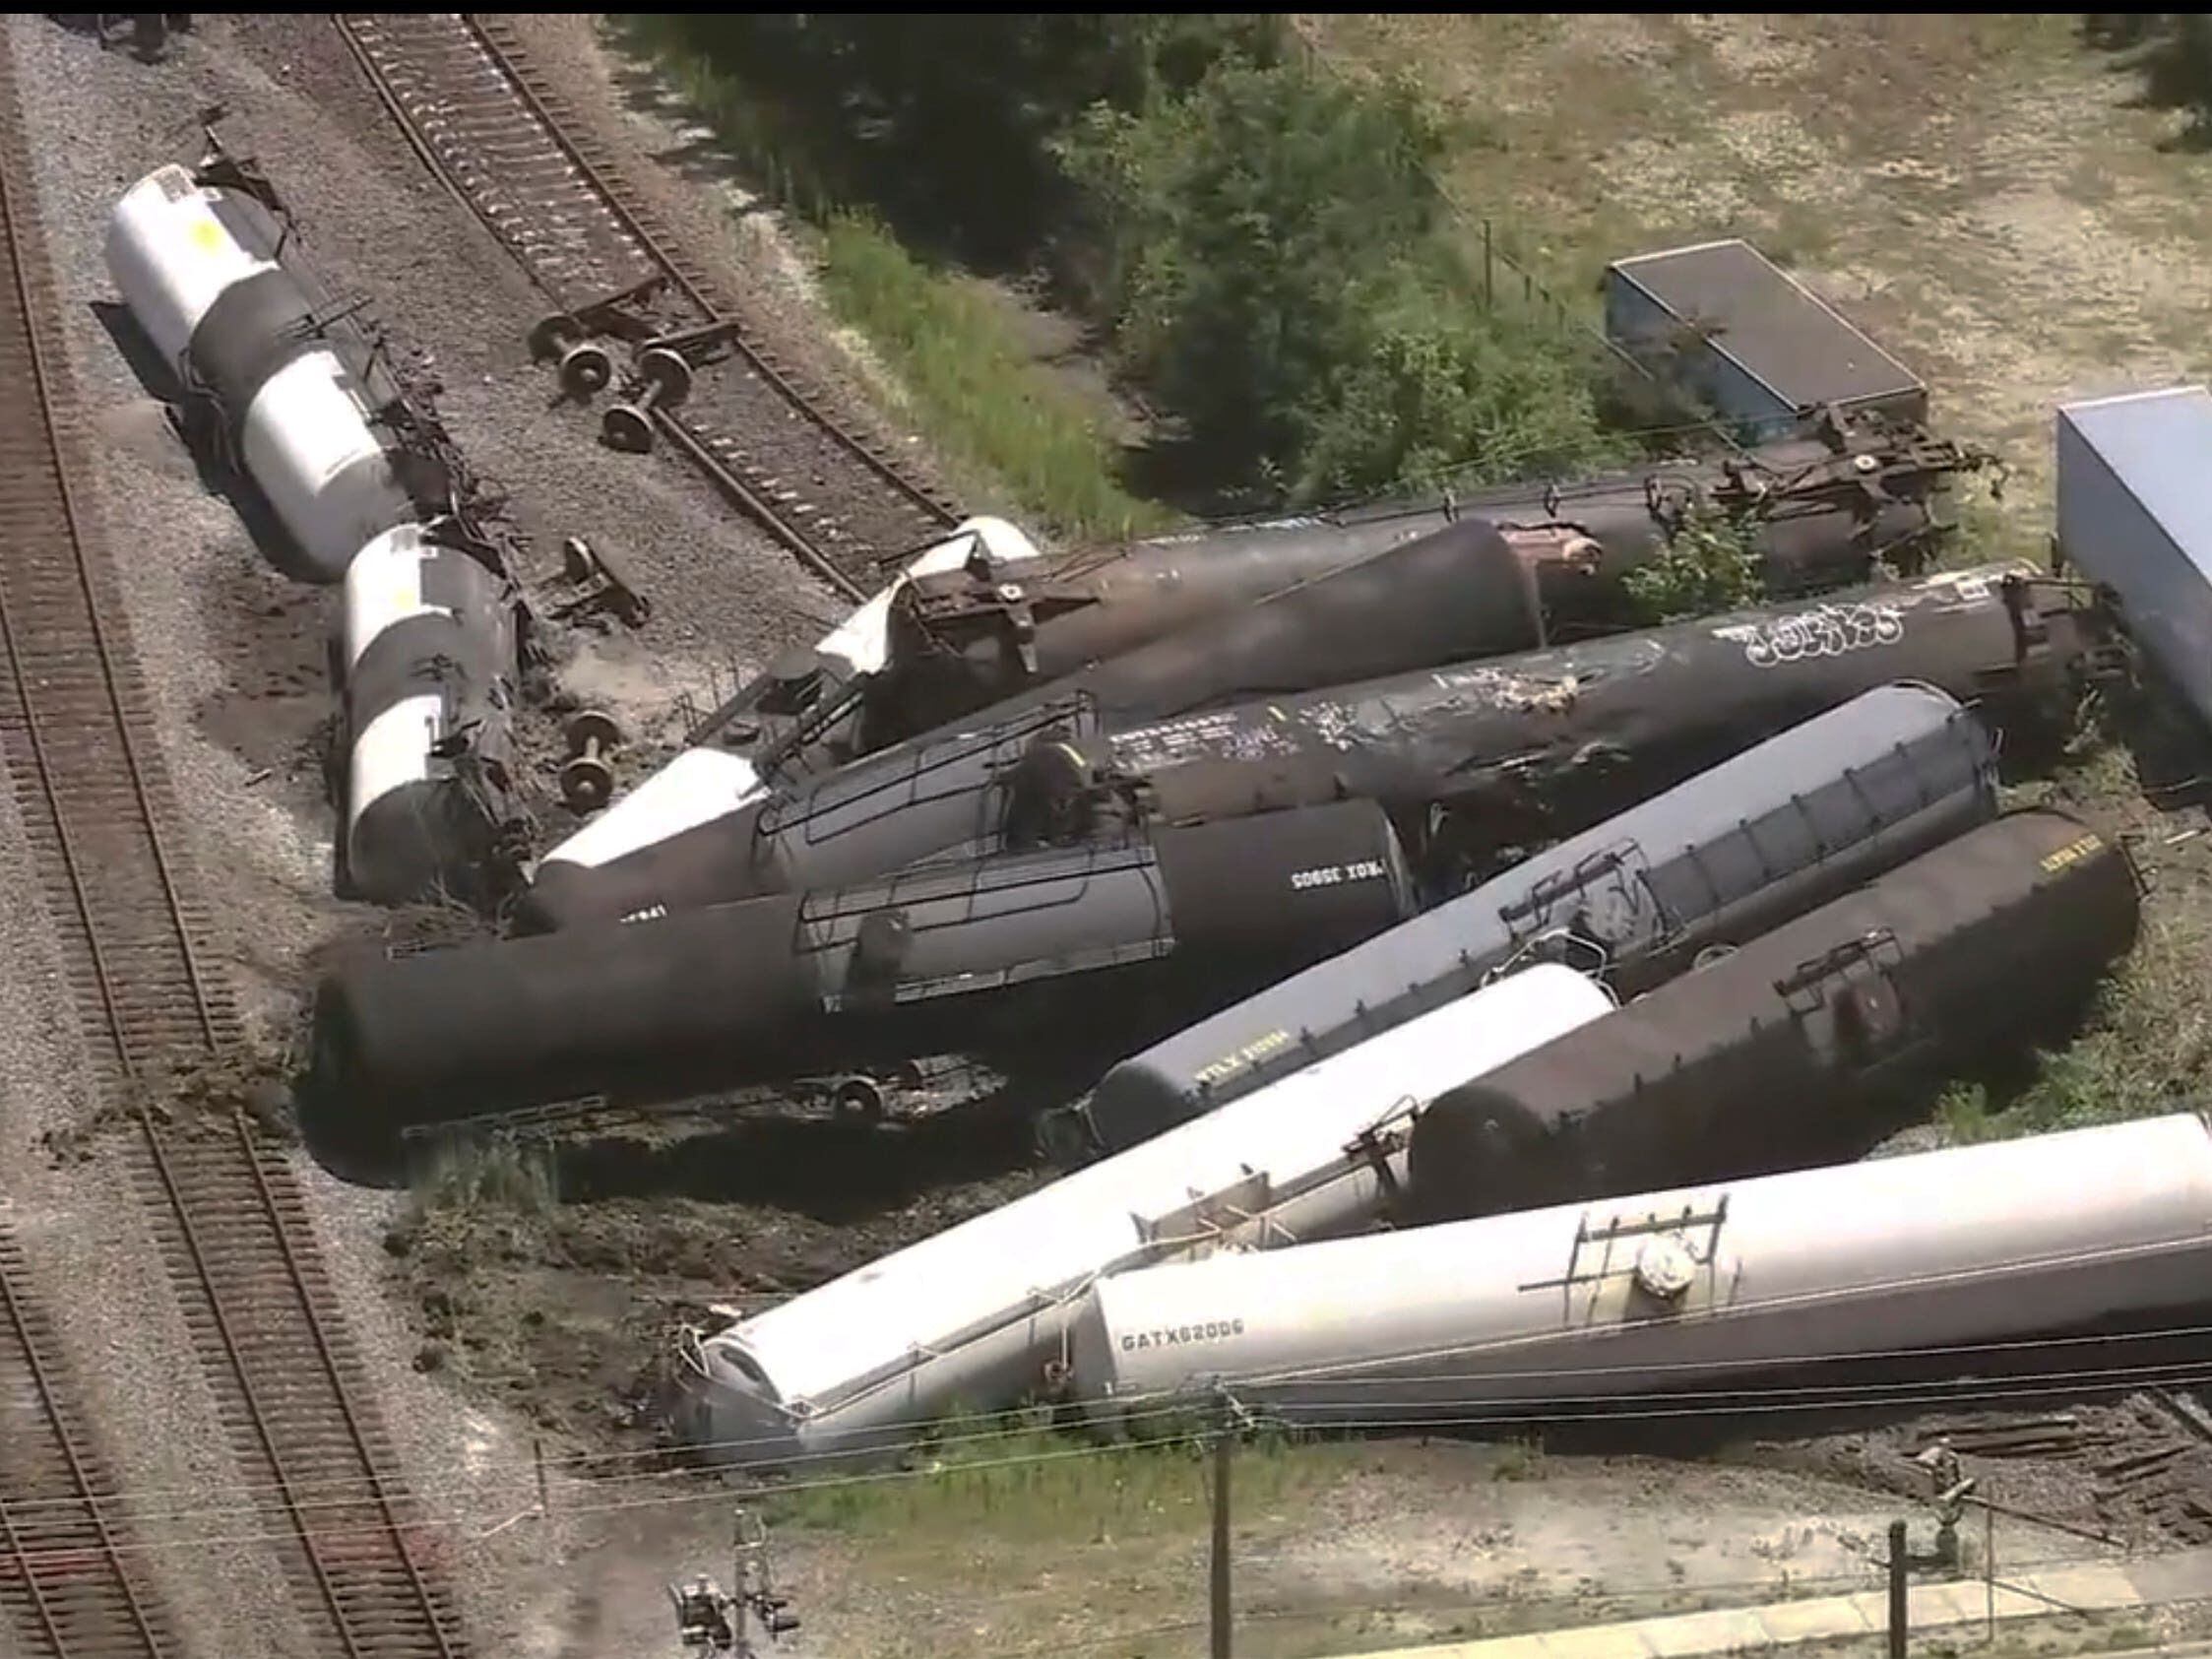 Freight train derails in suburban Chicago